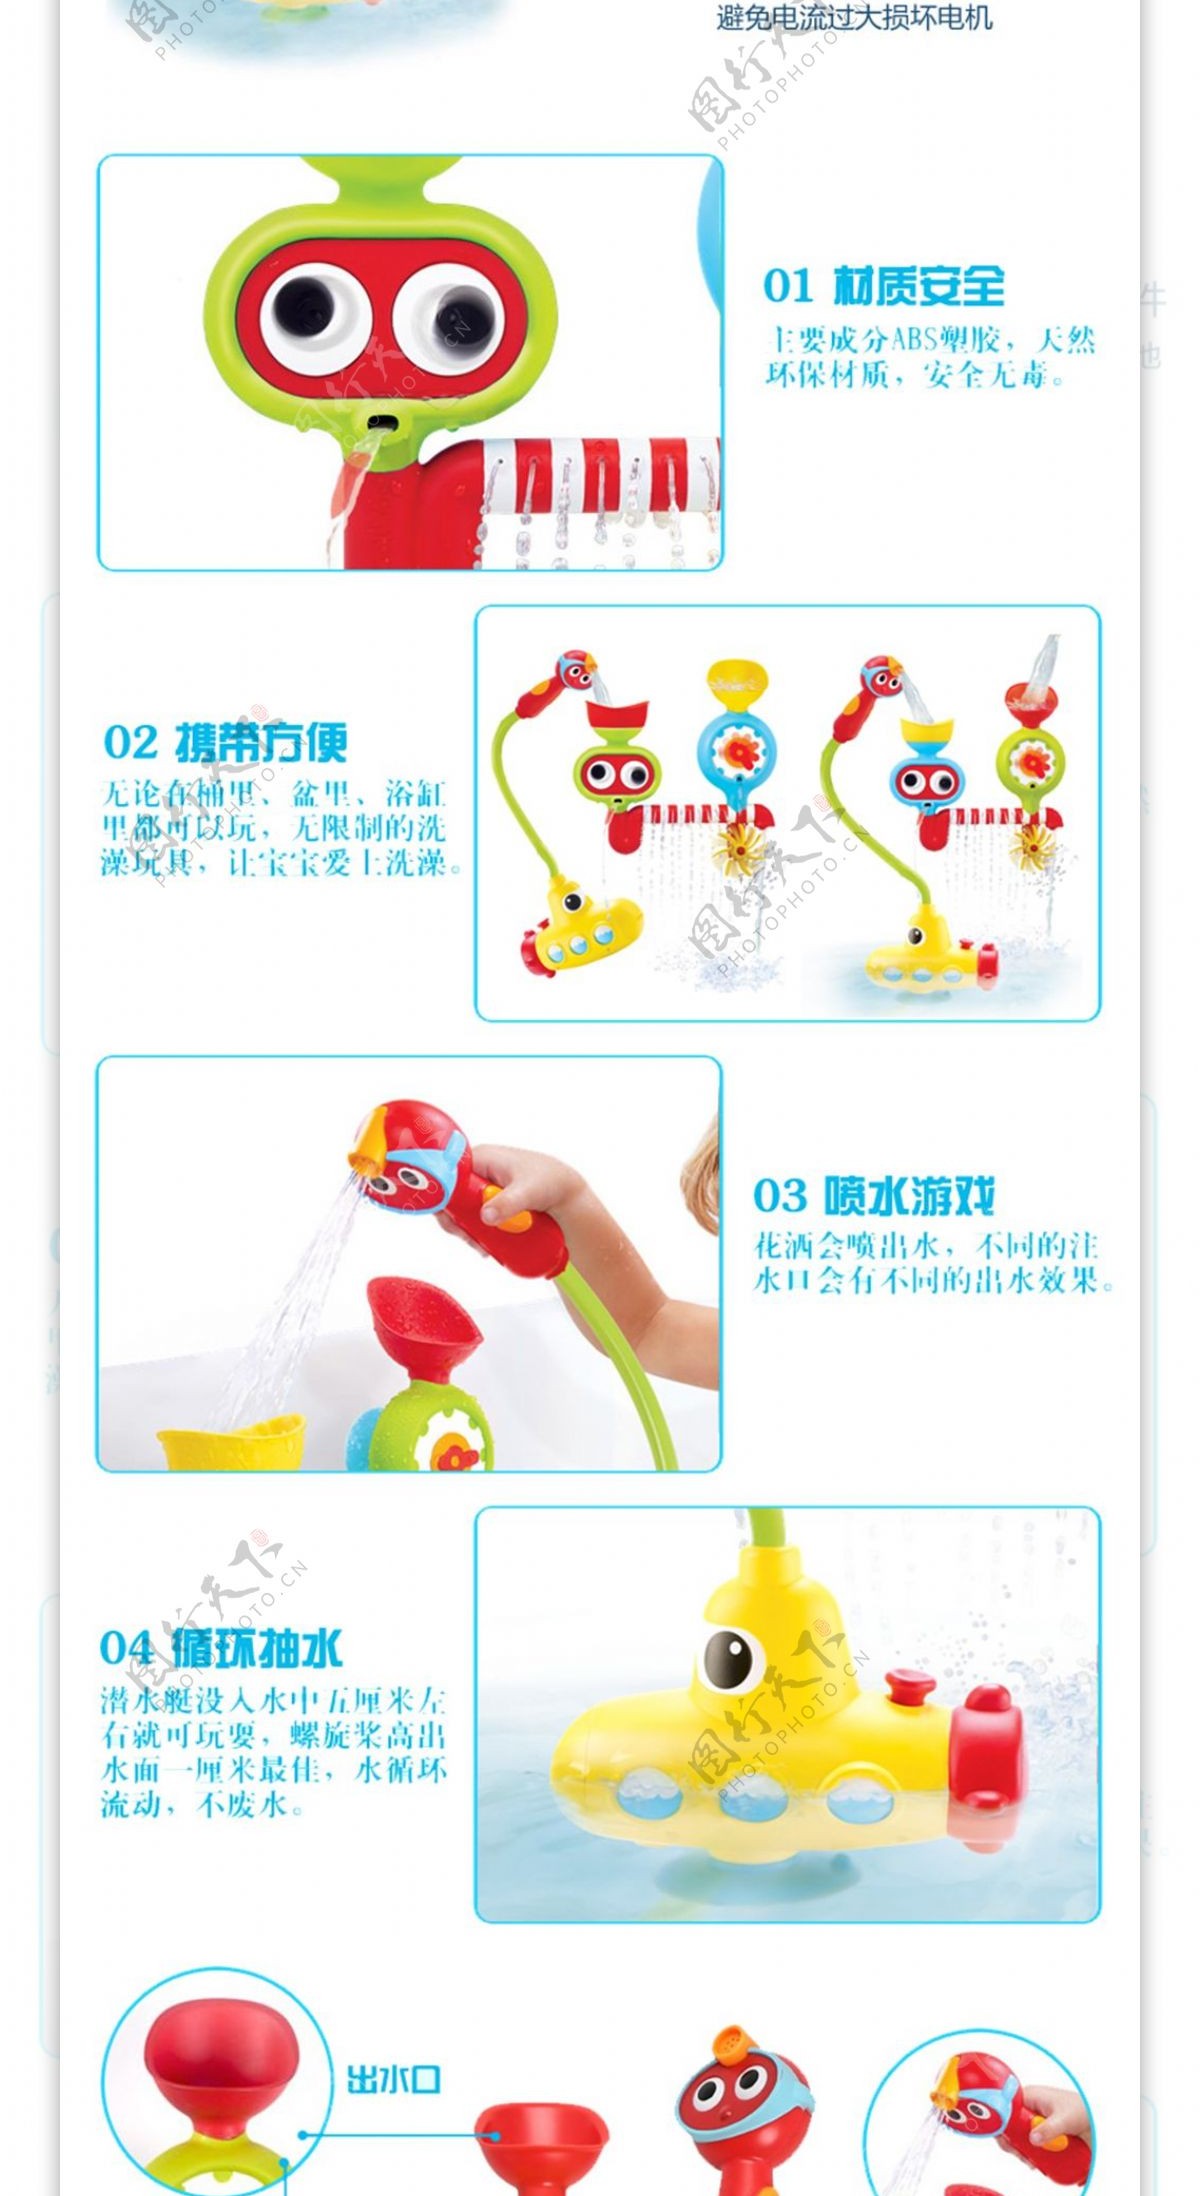 美国Yookidoo宝宝戏水玩具